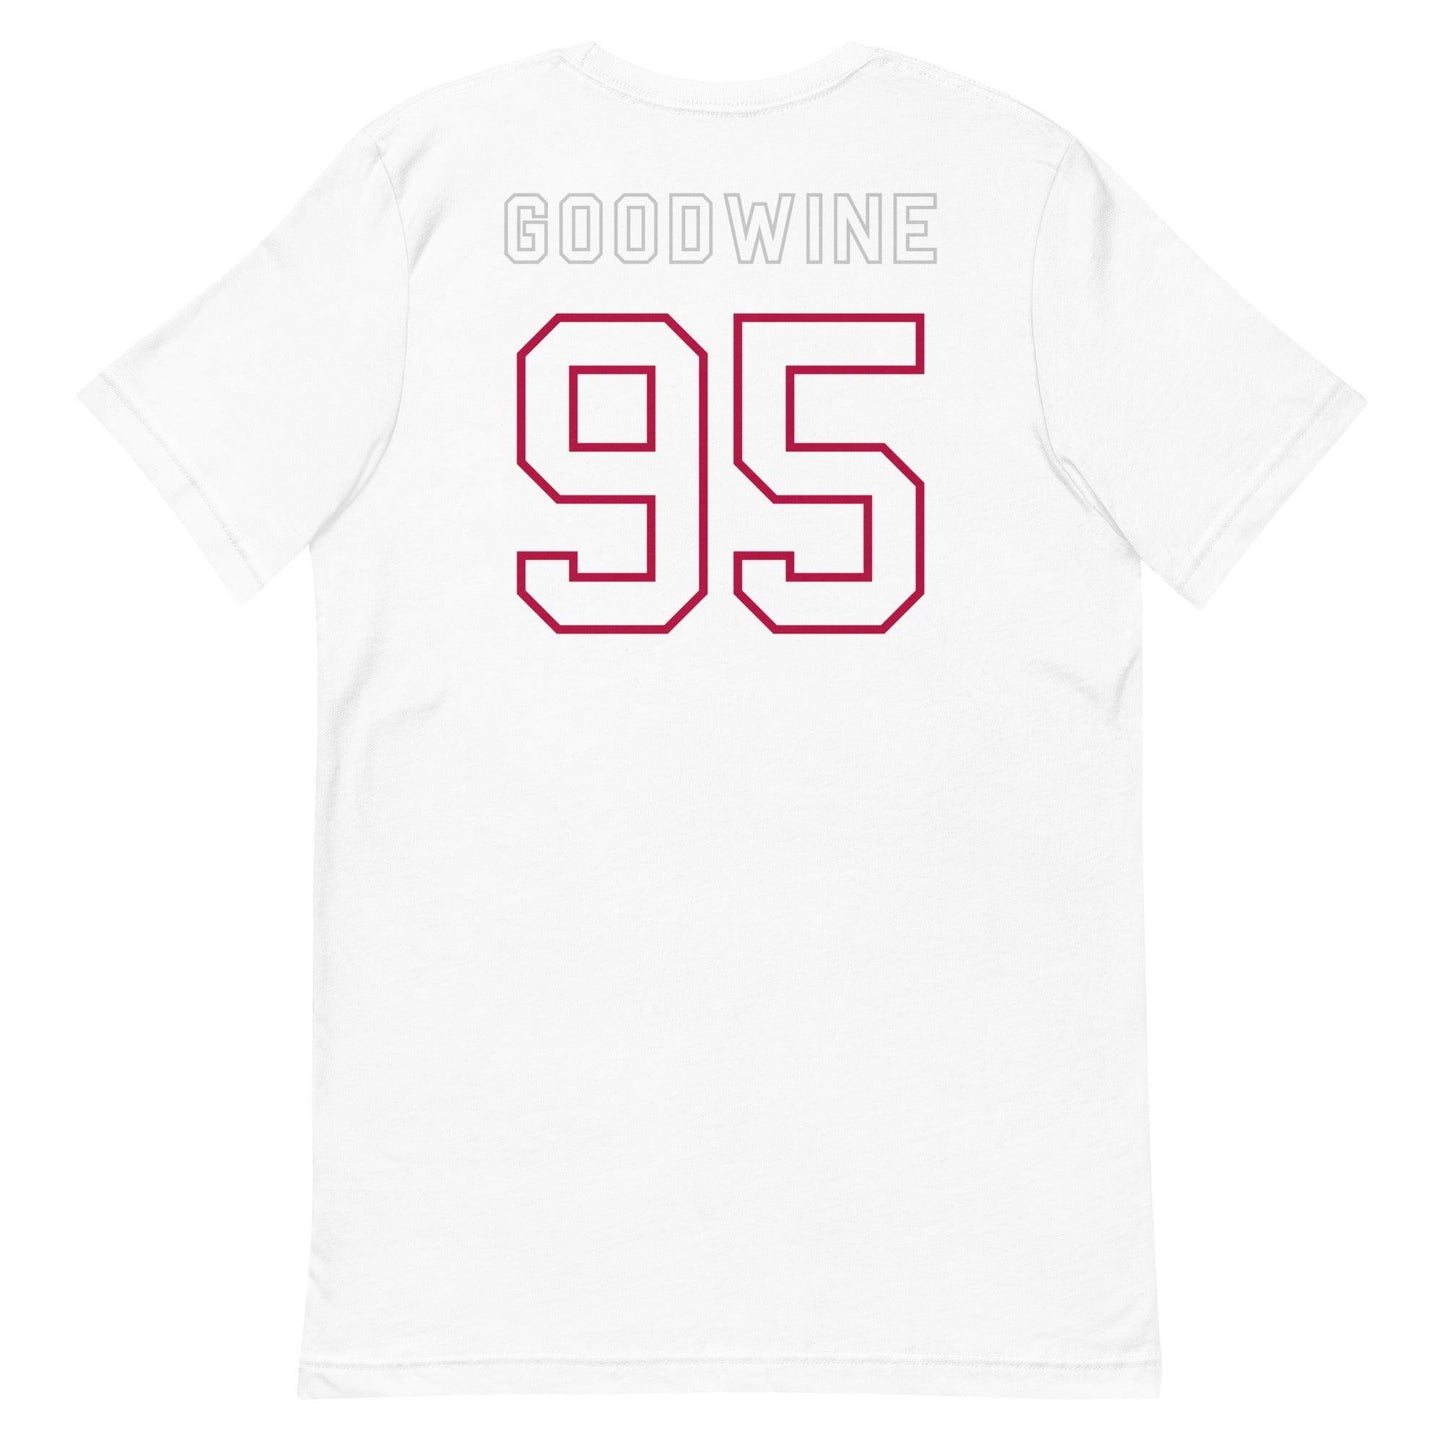 Monkell Goodwine  "Jersey" t-shirt - Fan Arch